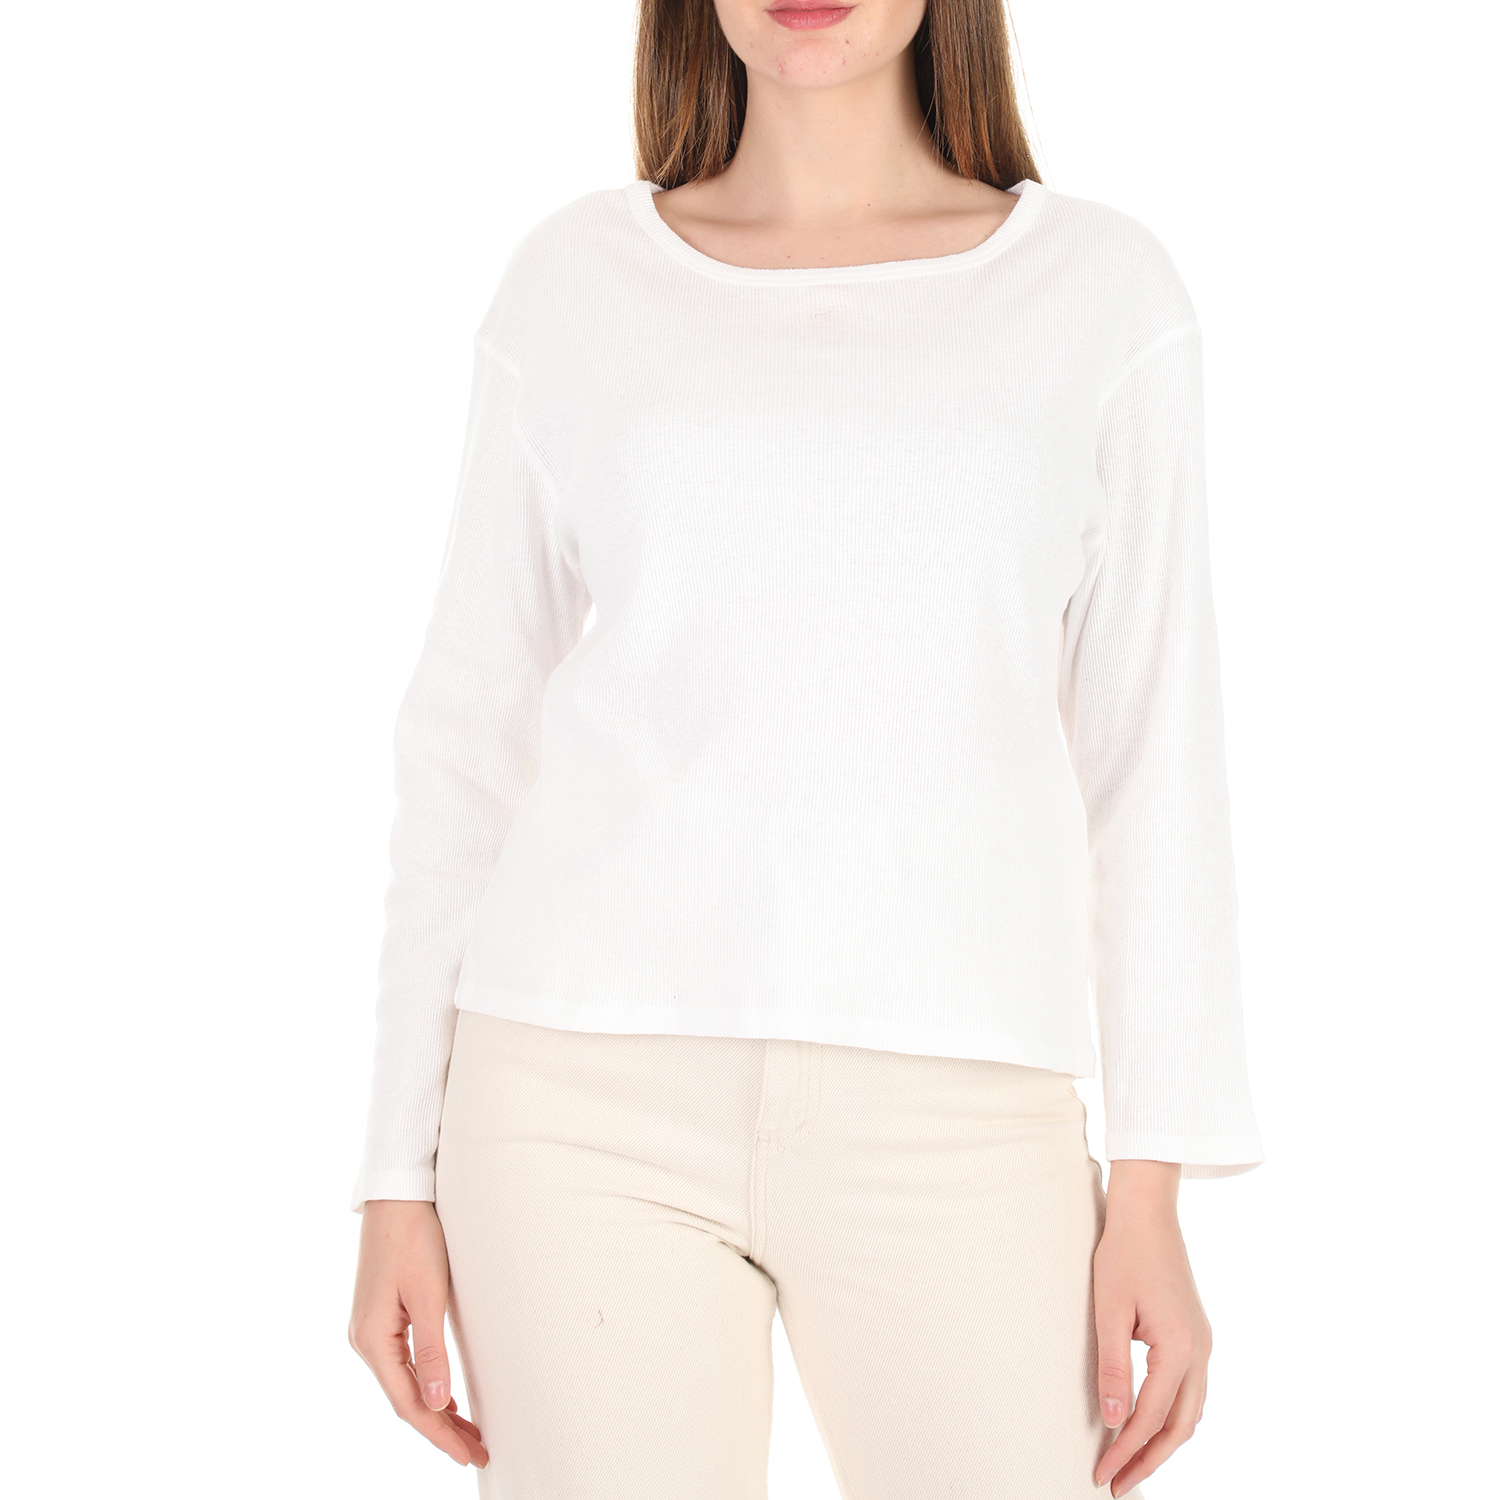 Γυναικεία/Ρούχα/Μπλούζες/Μακρυμάνικες AMERICAN VINTAGE - Γυναικεία μπλούζα AMERICAN VINTAGE λευκή